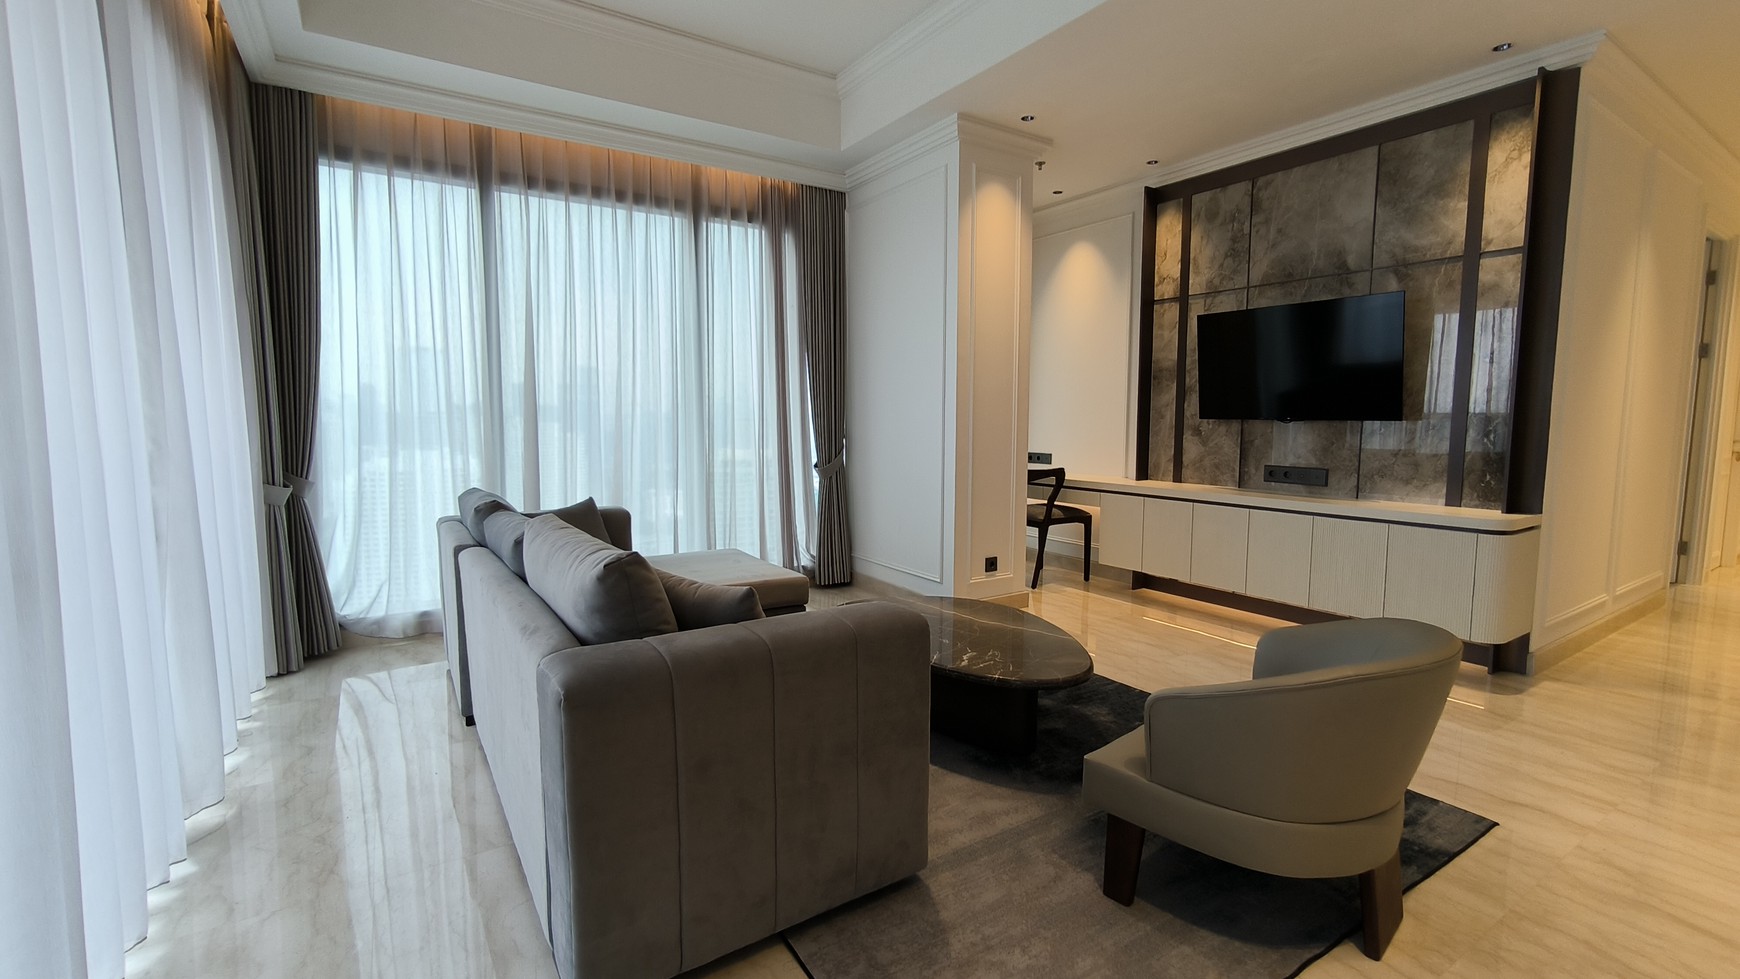 Apartement 57 Promenade - Hunian Exclusive - Lokasi Strategis di Pusat Bisnis Jakarta - Disewakan Furnished